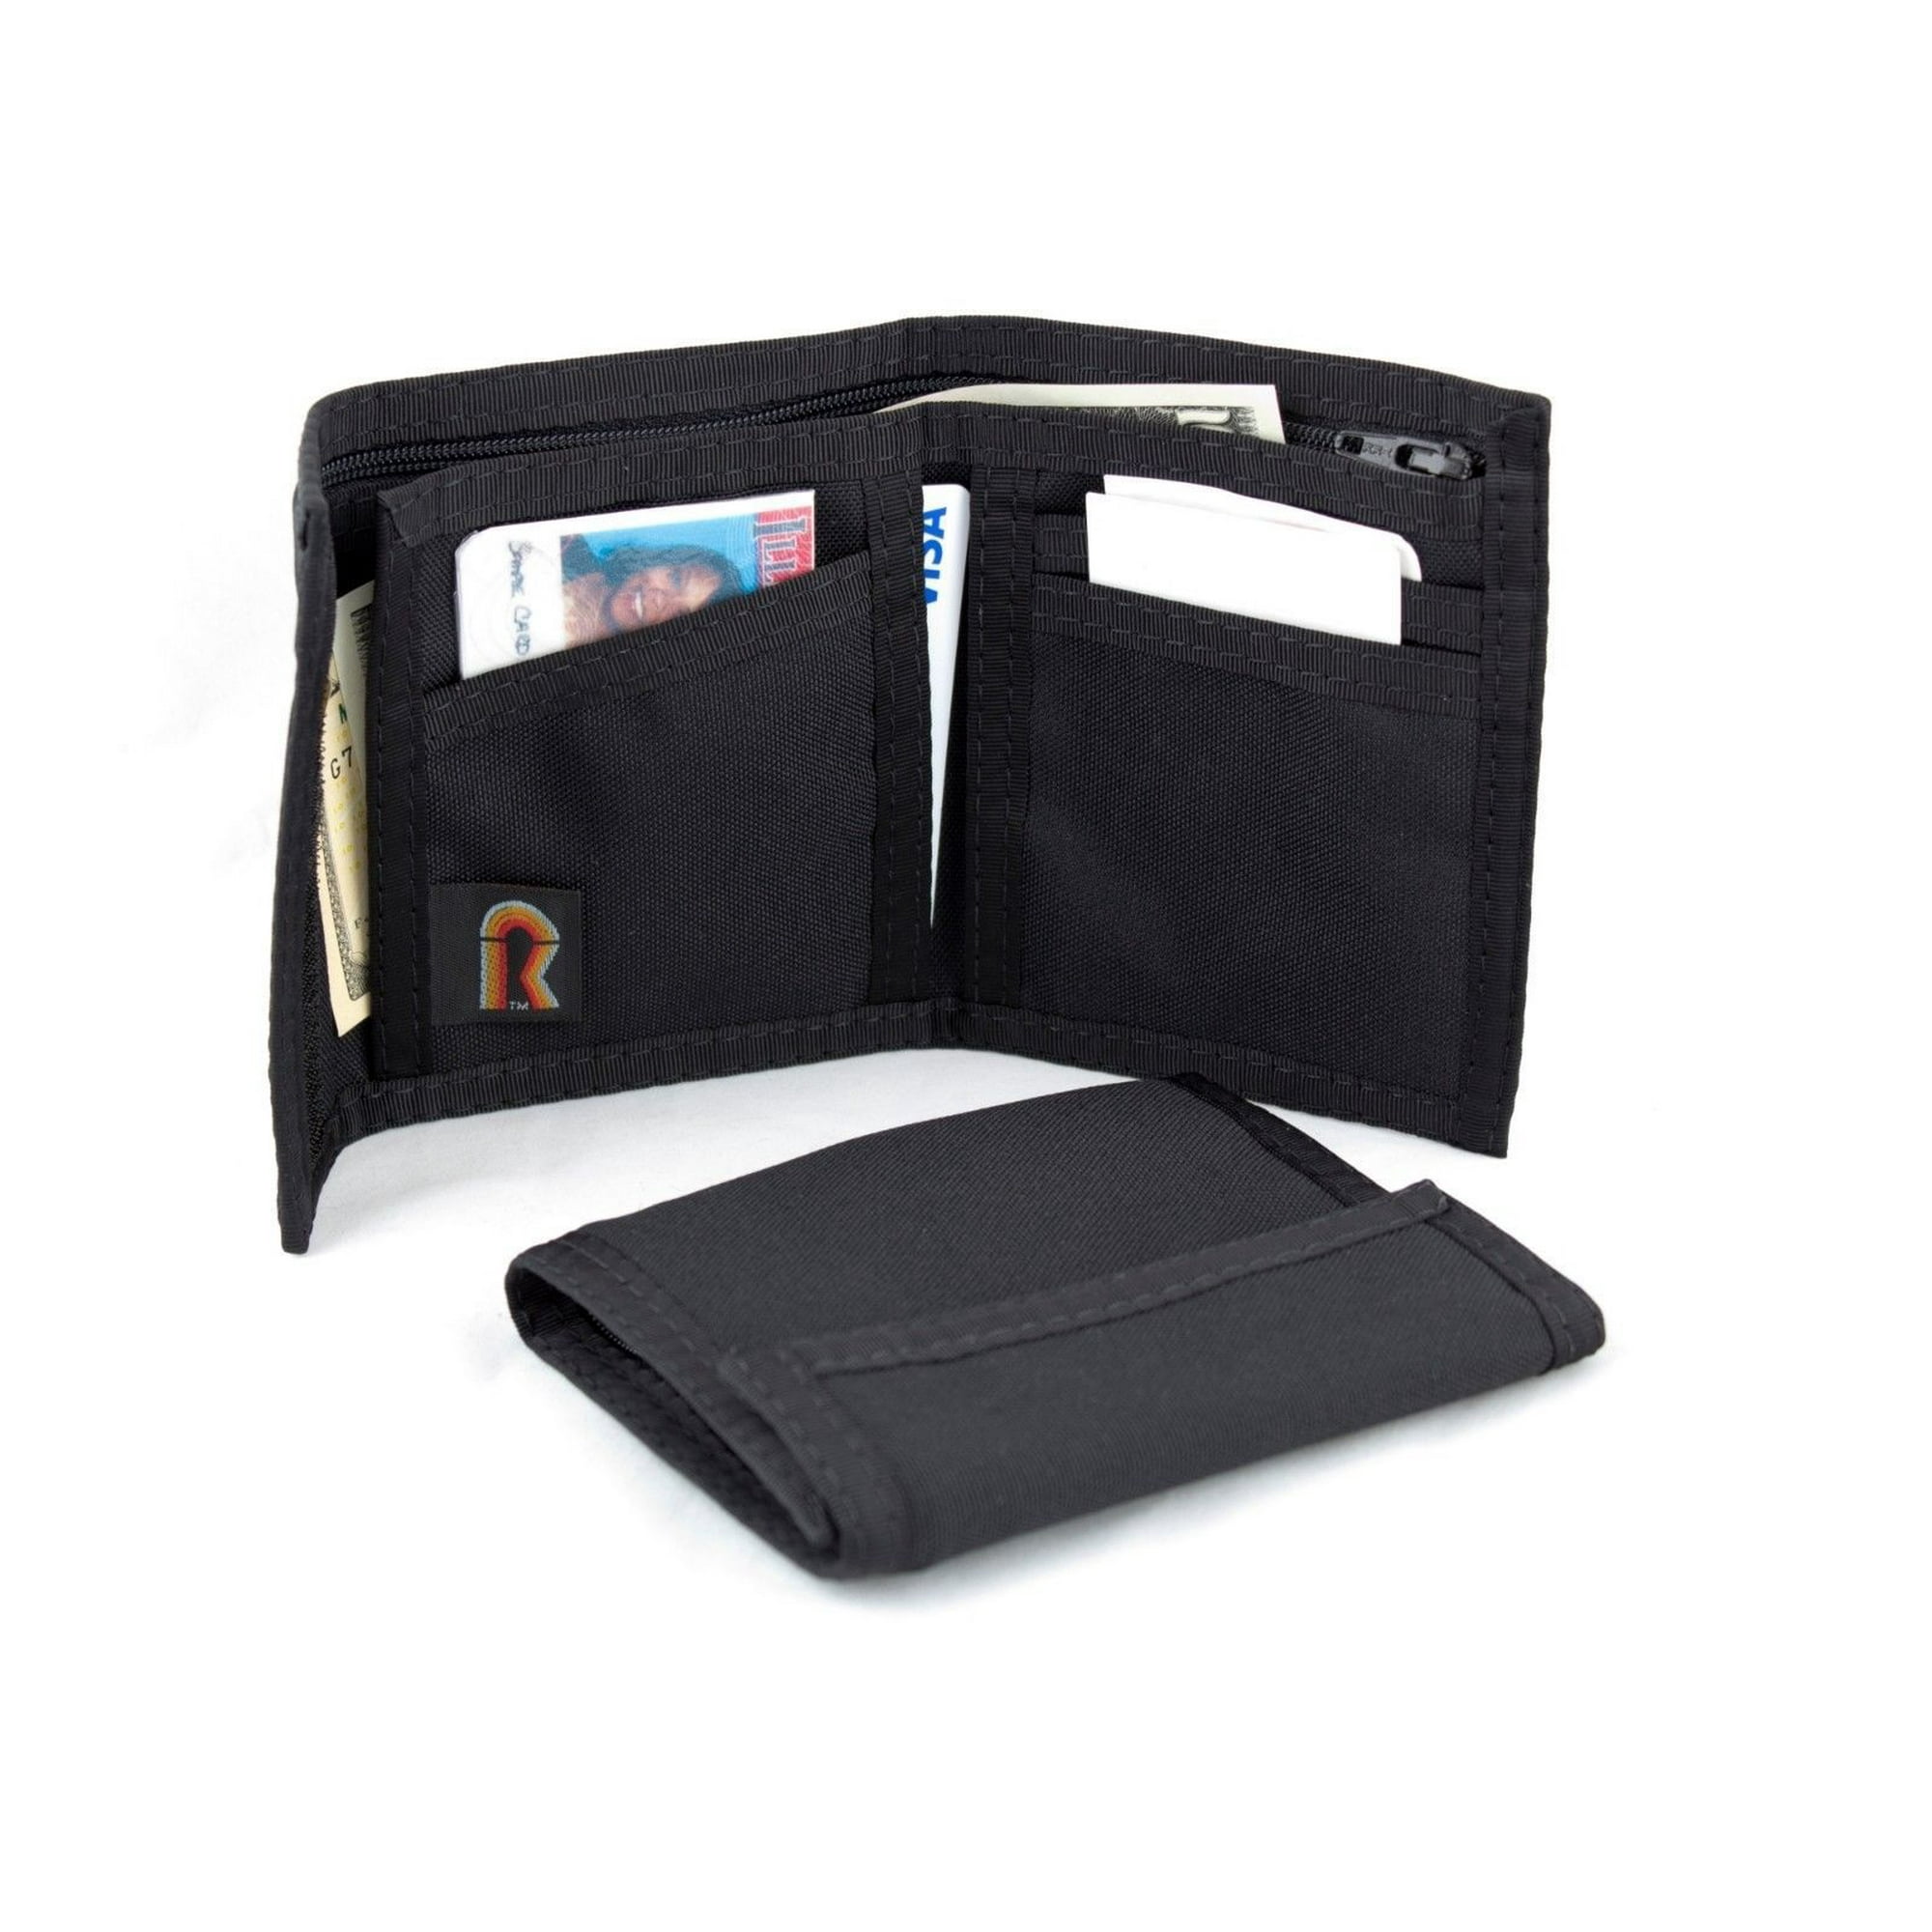 Men's Bi-fold wallet in ripstop